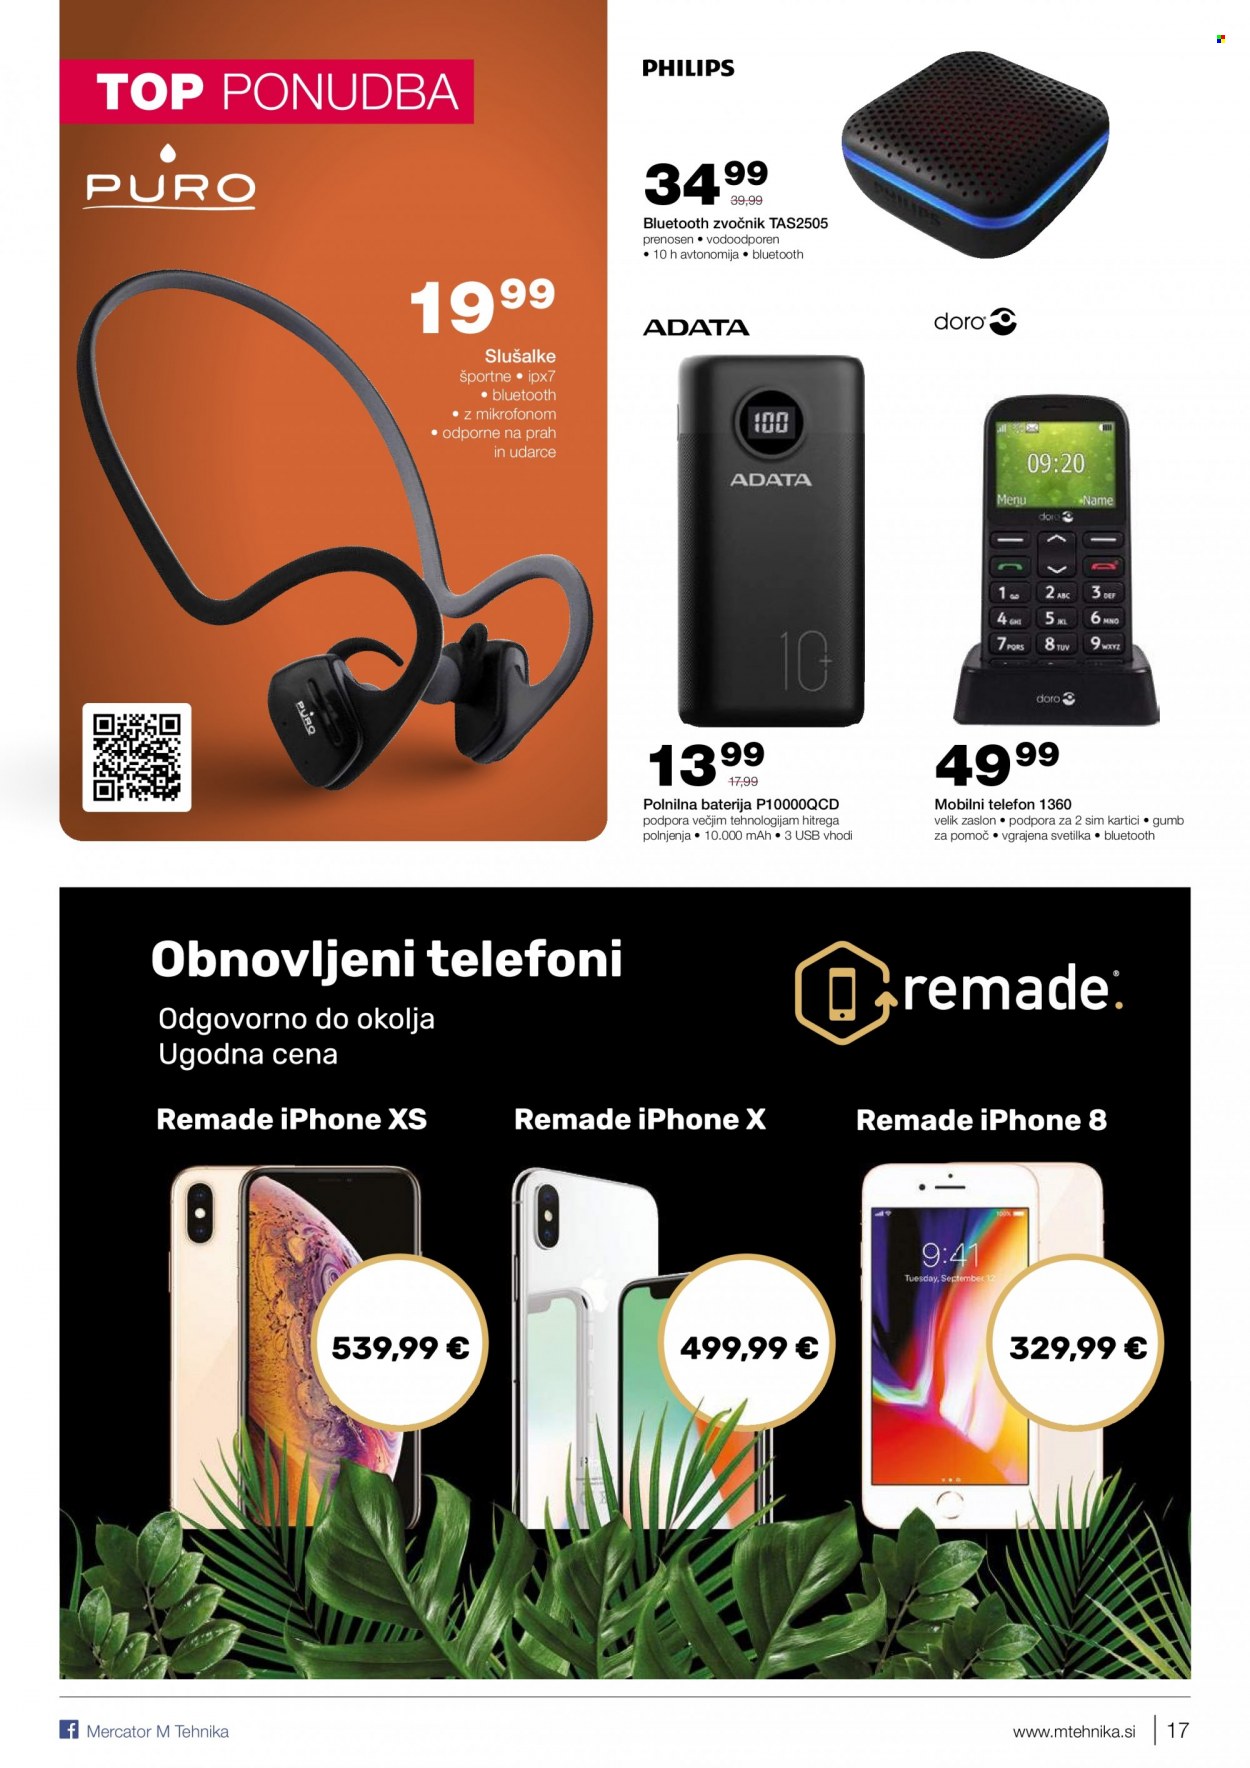 thumbnail - M Tehnika katalog - 16.9.2021 - 5.10.2021 - Ponudba izdelkov - Philips, Puro, baterija, polnilna baterija, iPhone, mobilni telefon, iPhone 8, iPhone X, iPhone Xs, telefon, svetilka. Stran 17.